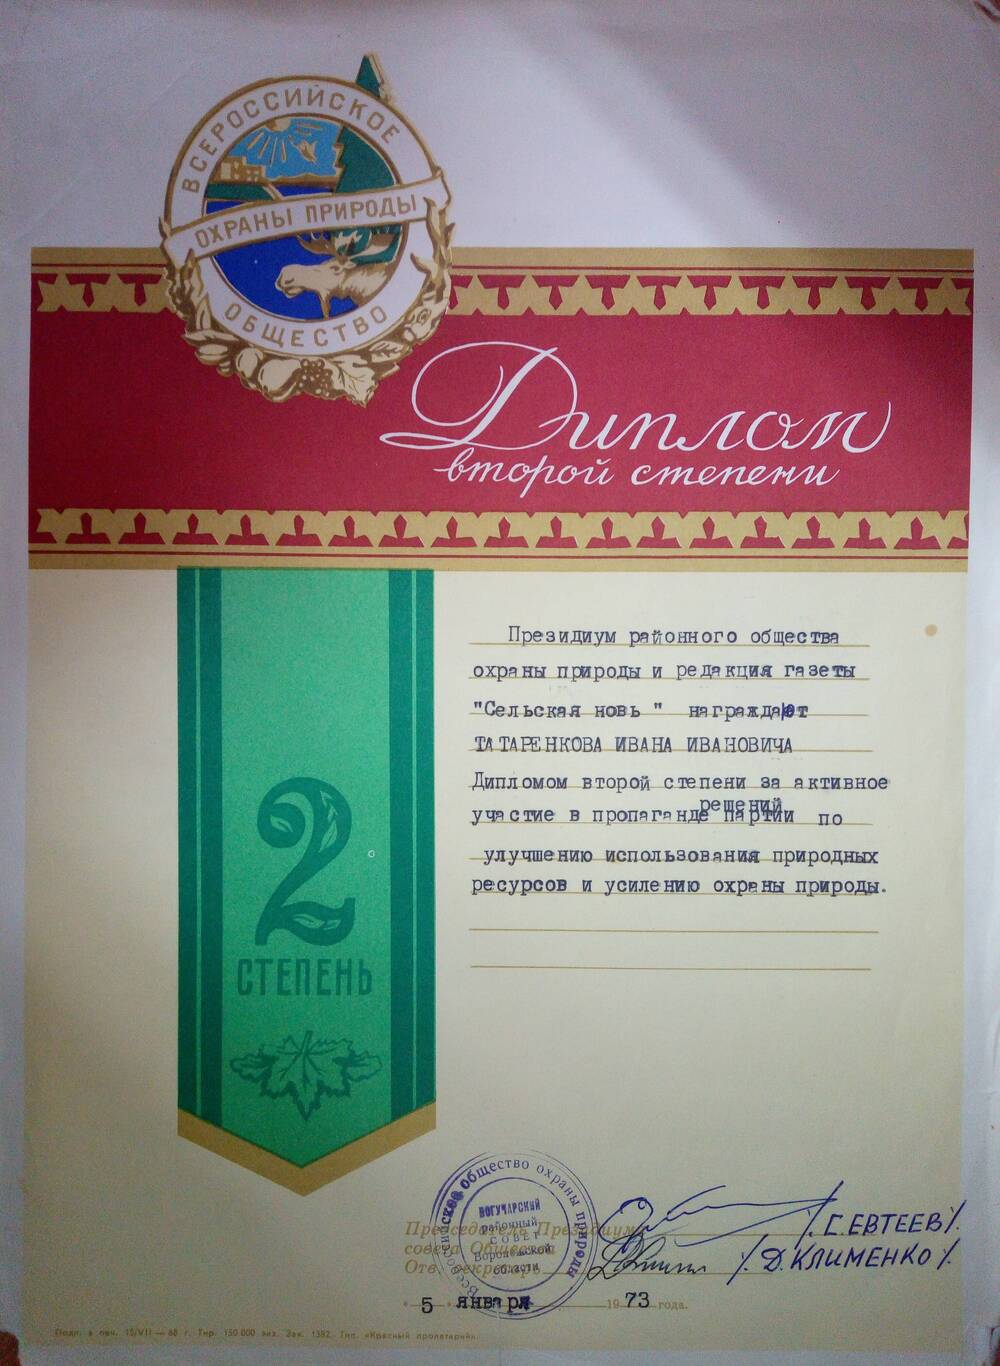 Диплом 2 степени Татаренкову И.И. от 5 января 1973 г.